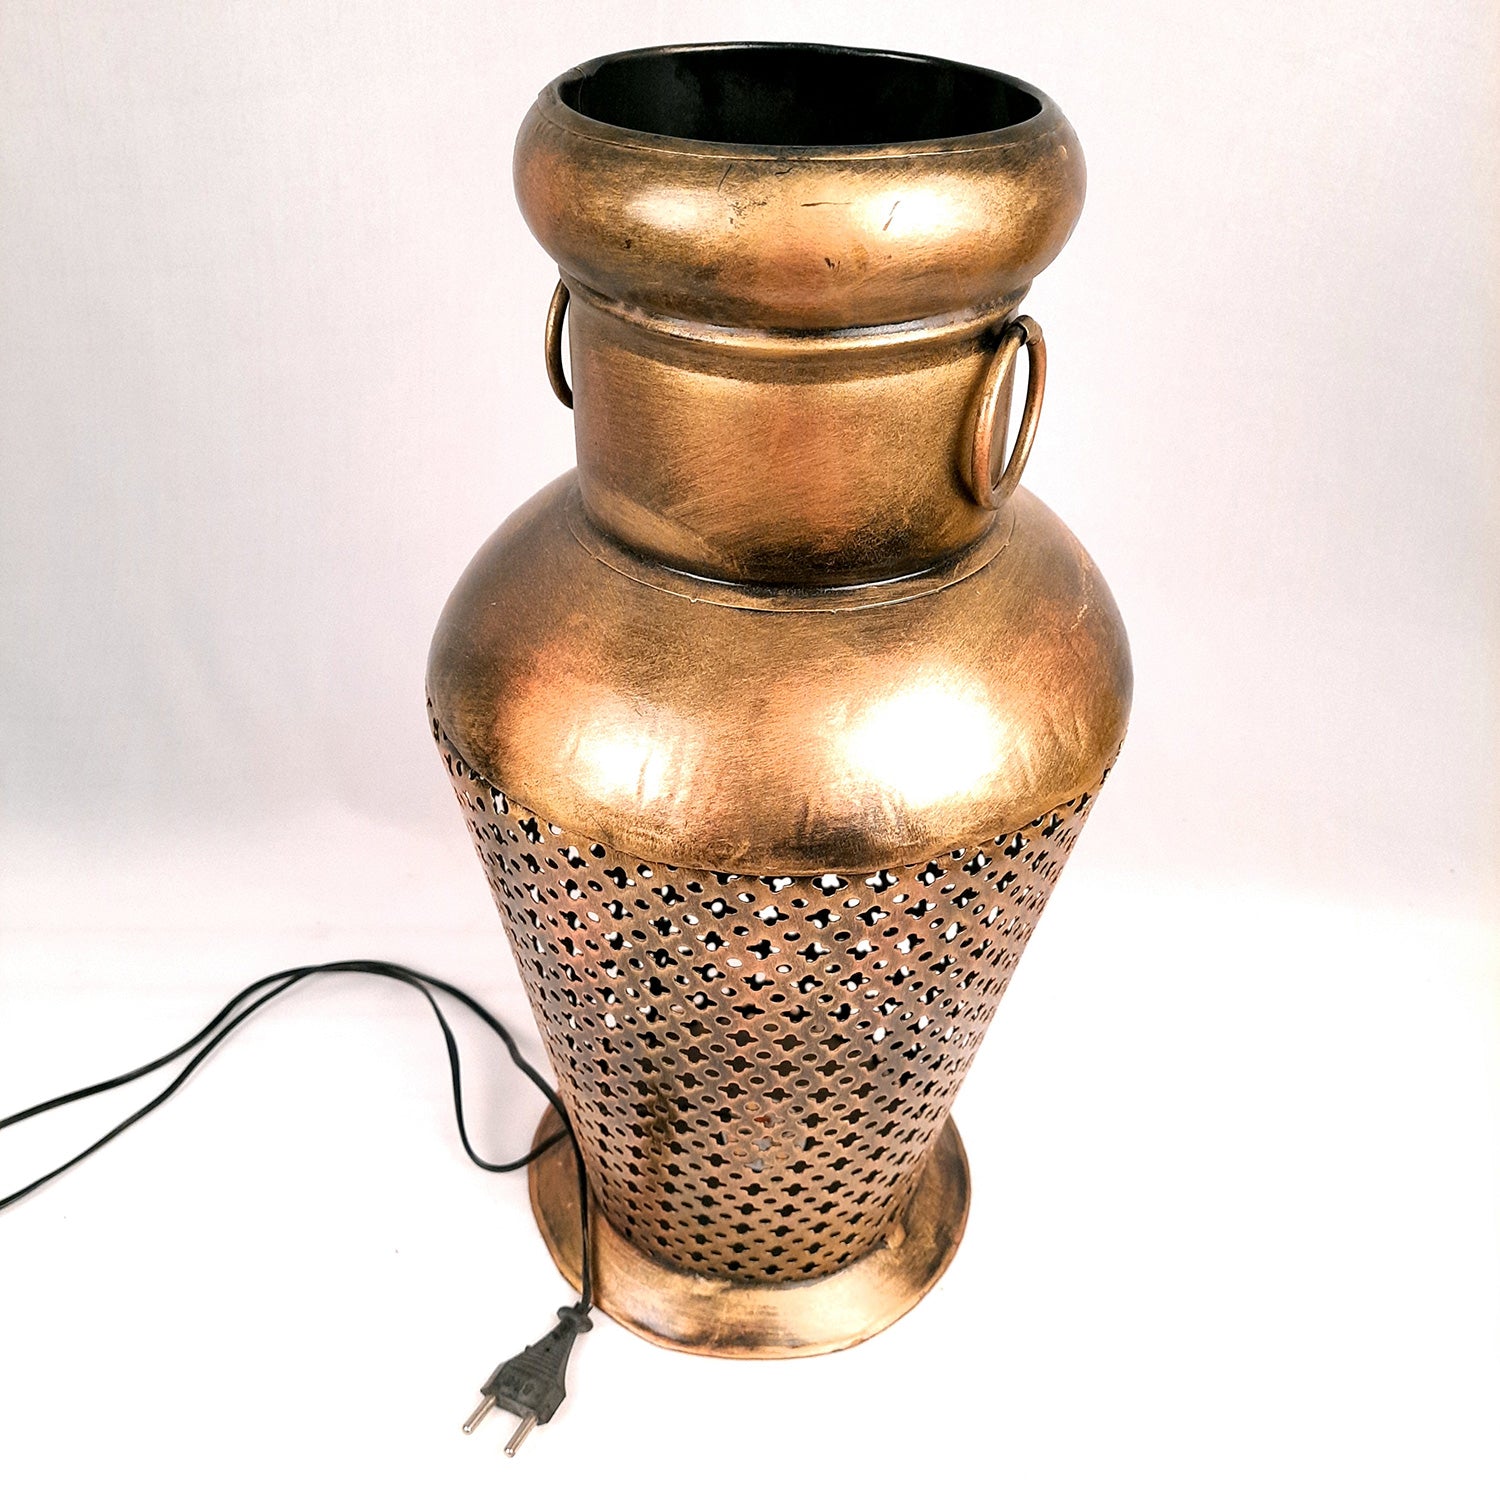 Corner Vase With Led Light | LED Lamp | Showpiece - for Home, Living Room, Bedroom & Gifts - 17 Inch - Apkamart